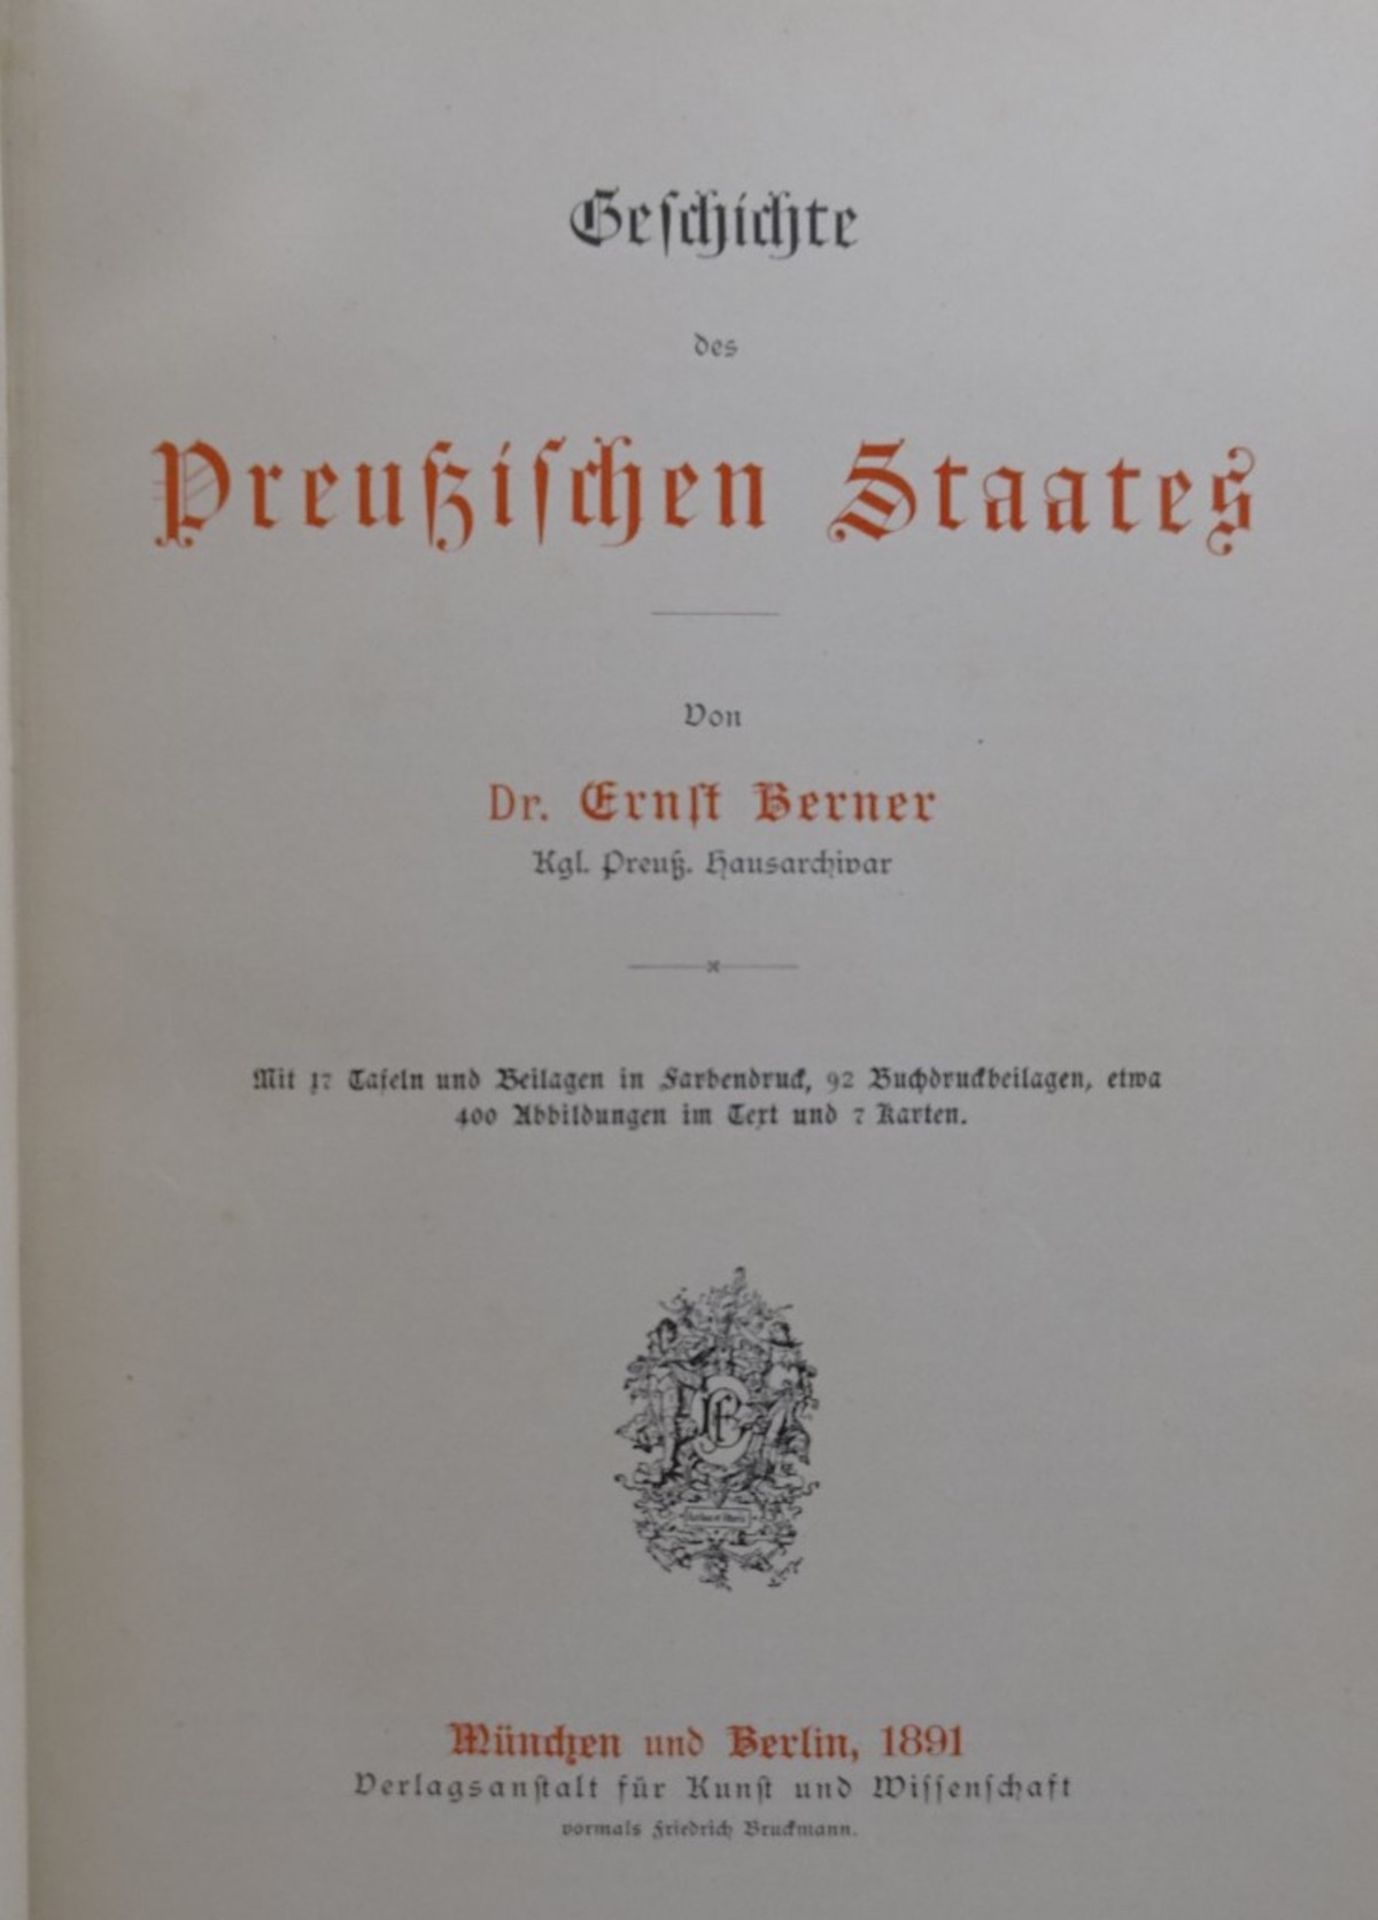 Geschichte des preußischen Staates, Berlin 1891, mit 17 Tafeln und Beilagen in Farbendruck,400 - Bild 3 aus 8